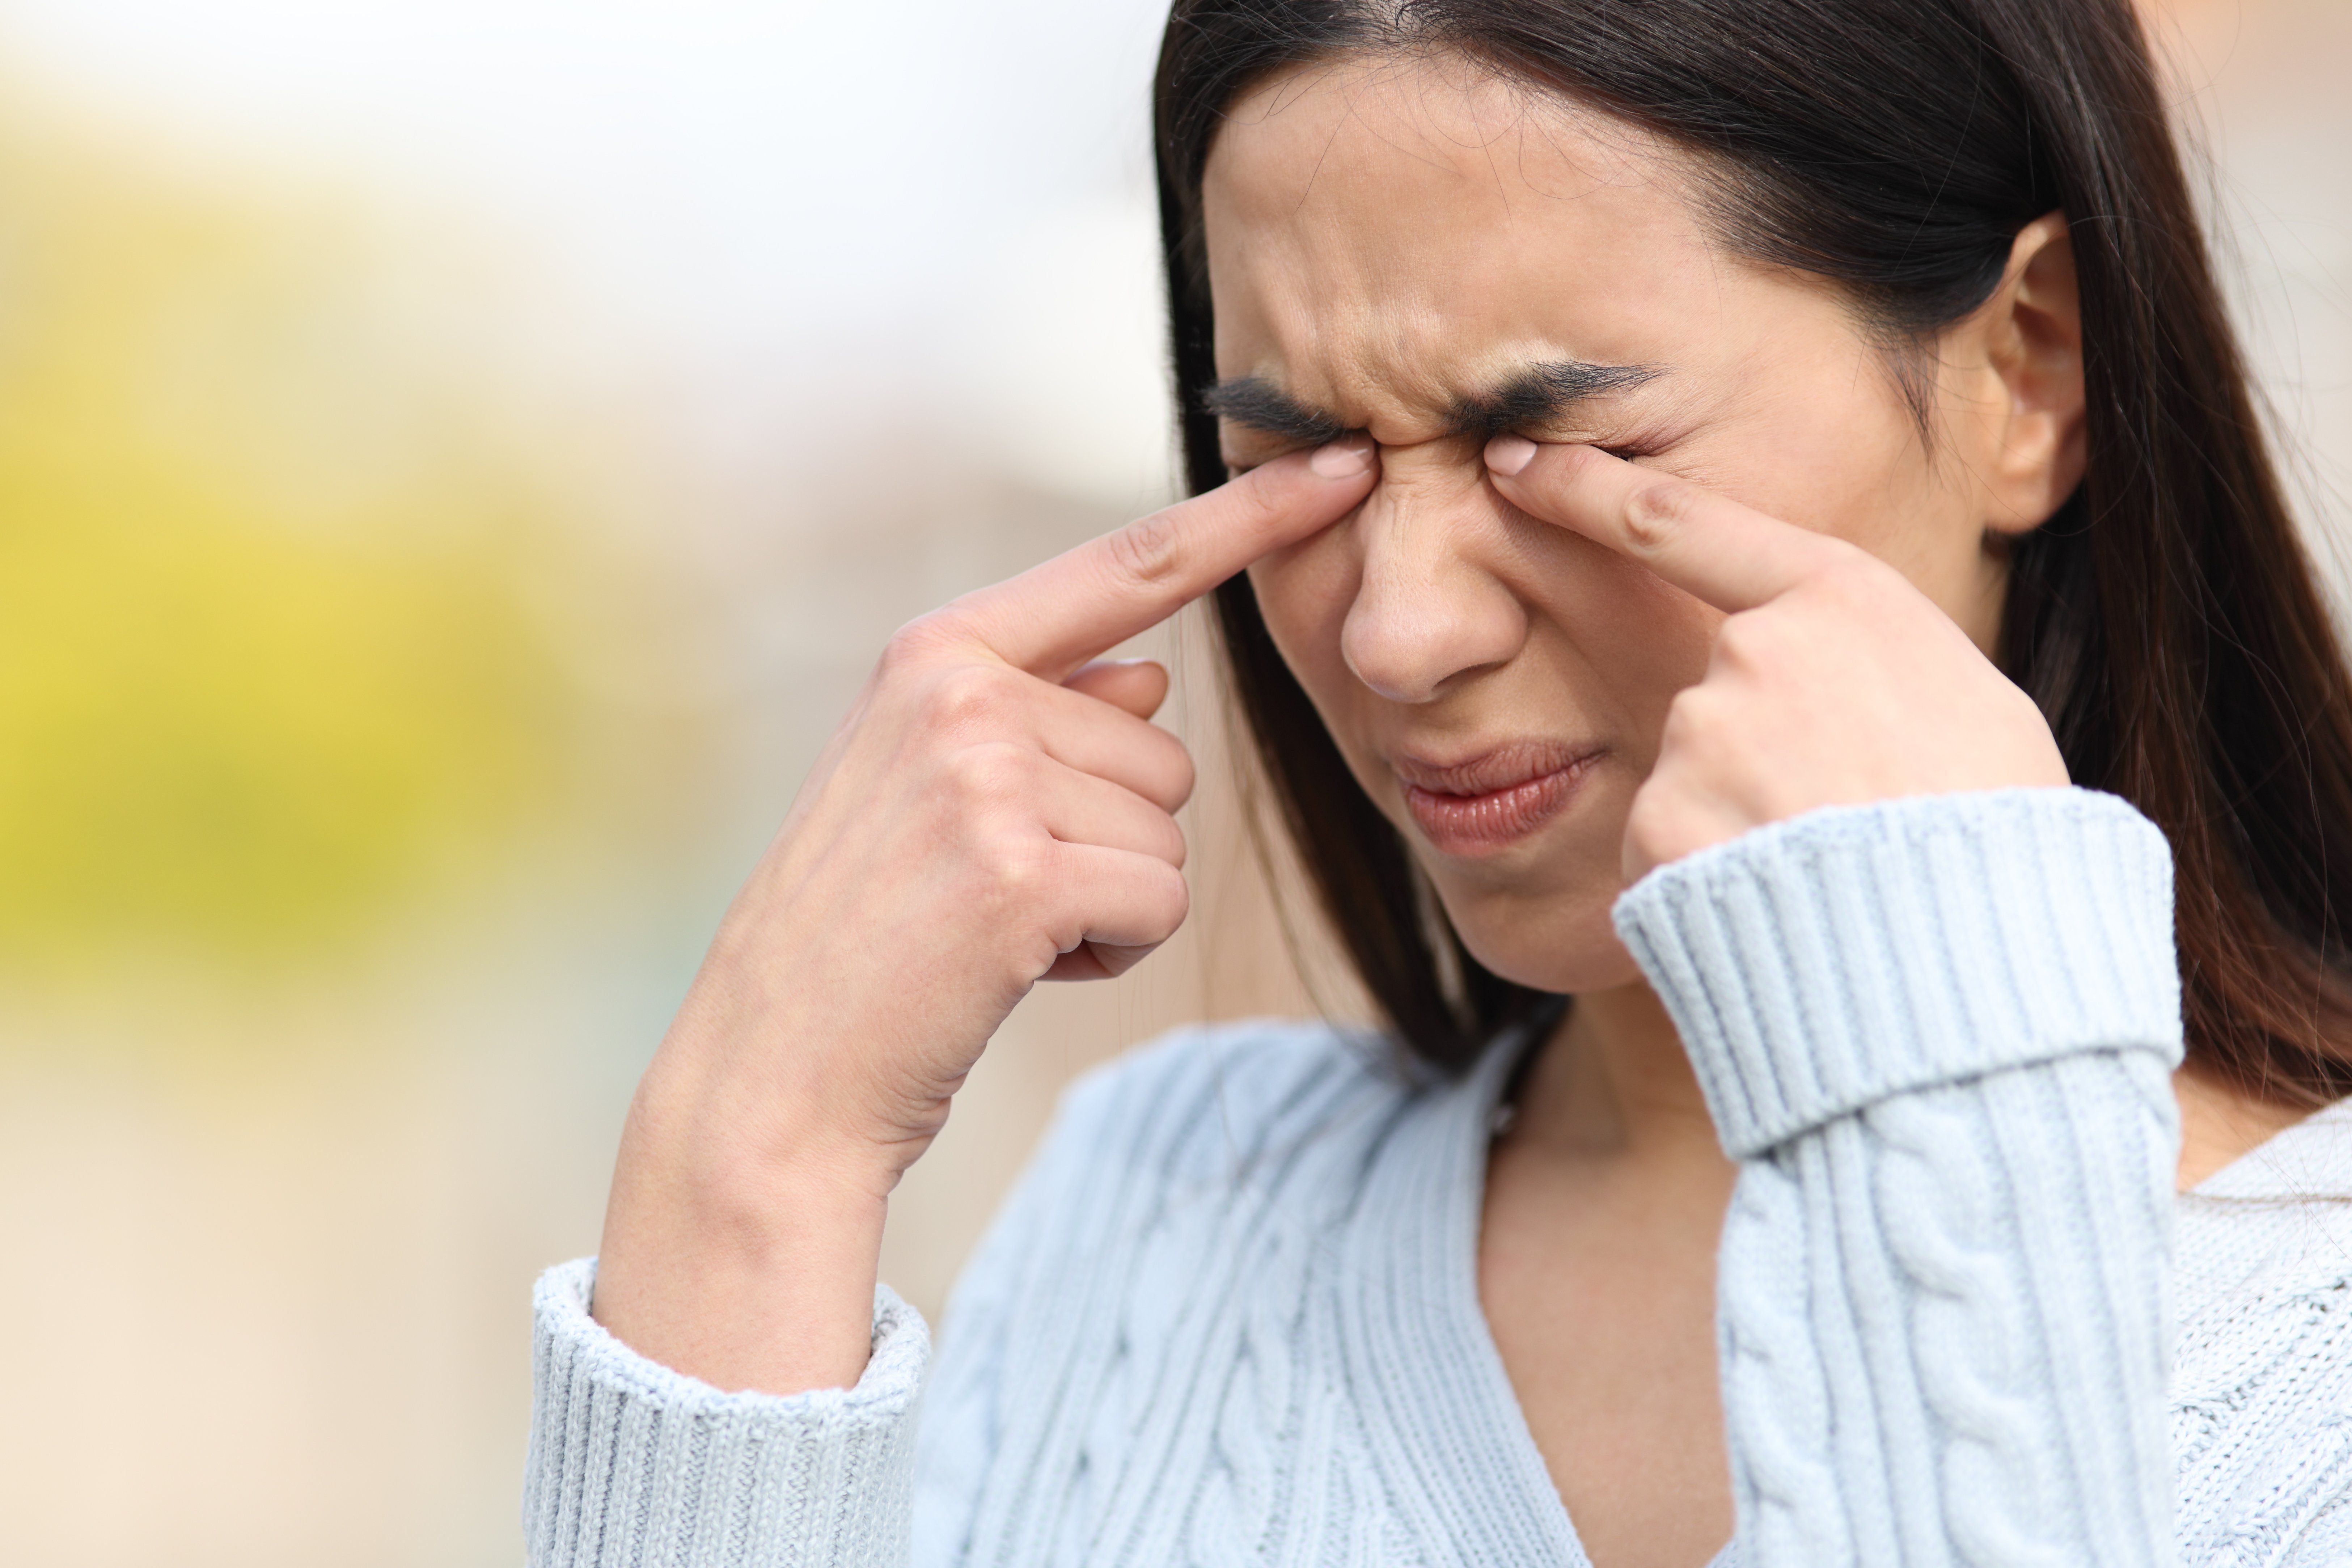 Do Allergies Impact Keratoconus?